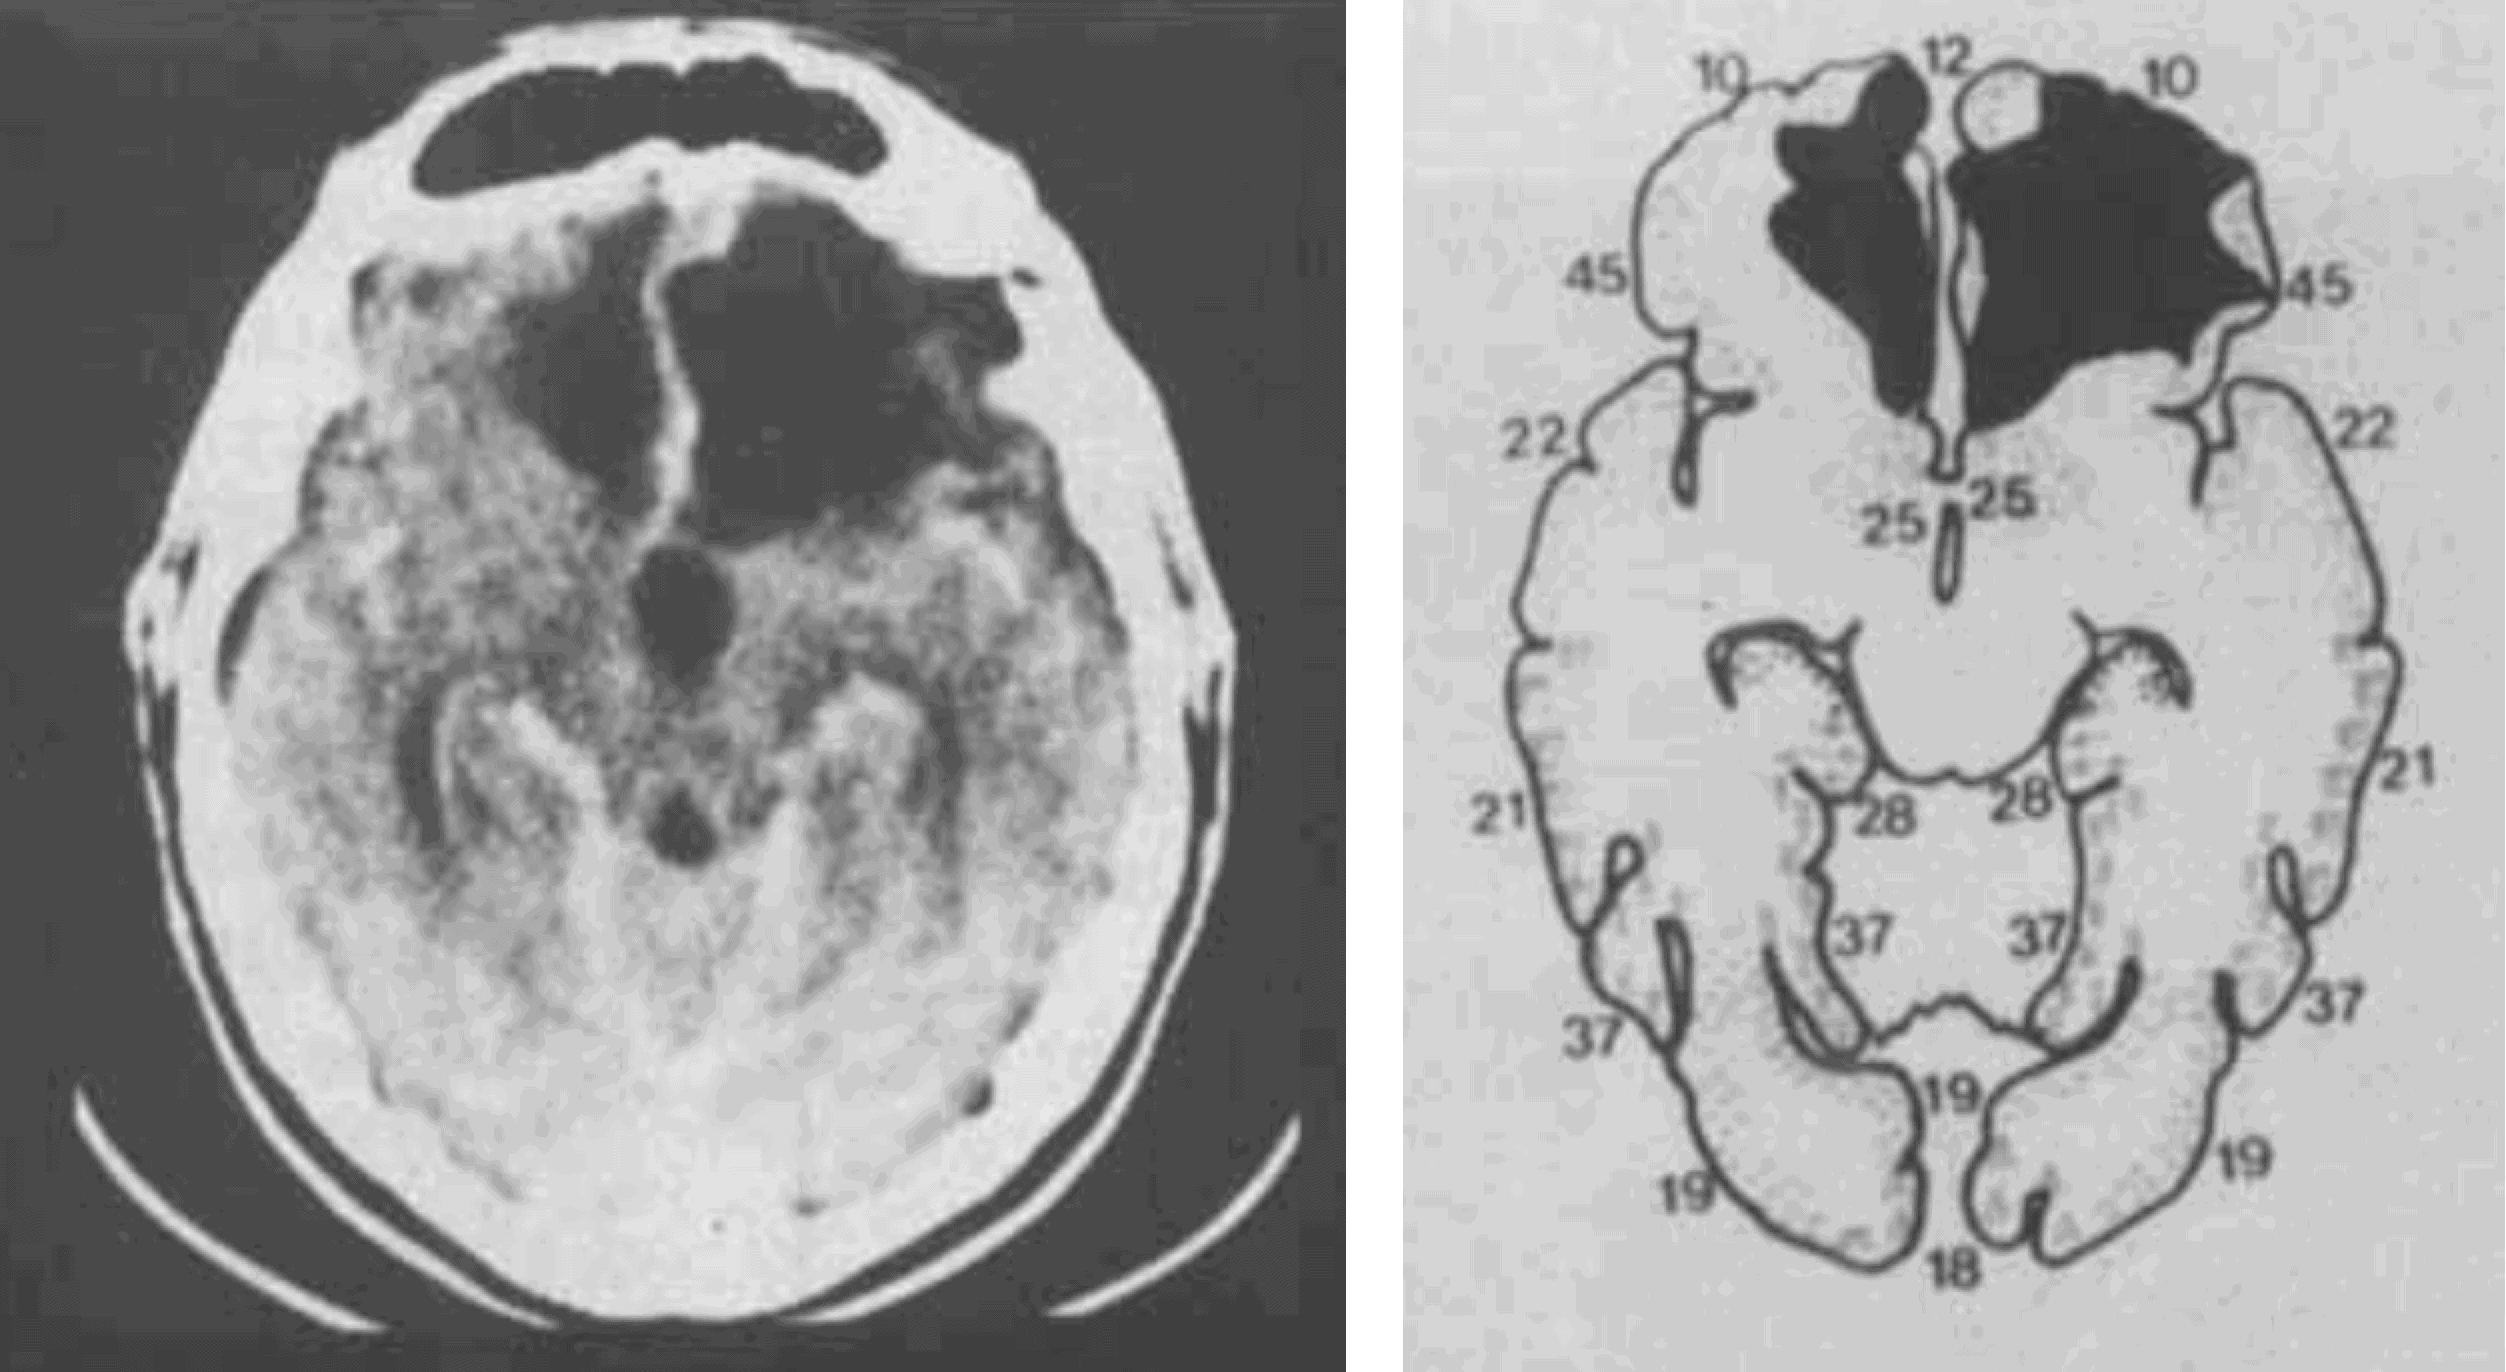 รูปรอยแผลในสมองส่วน vmPFC ของอีเลียต